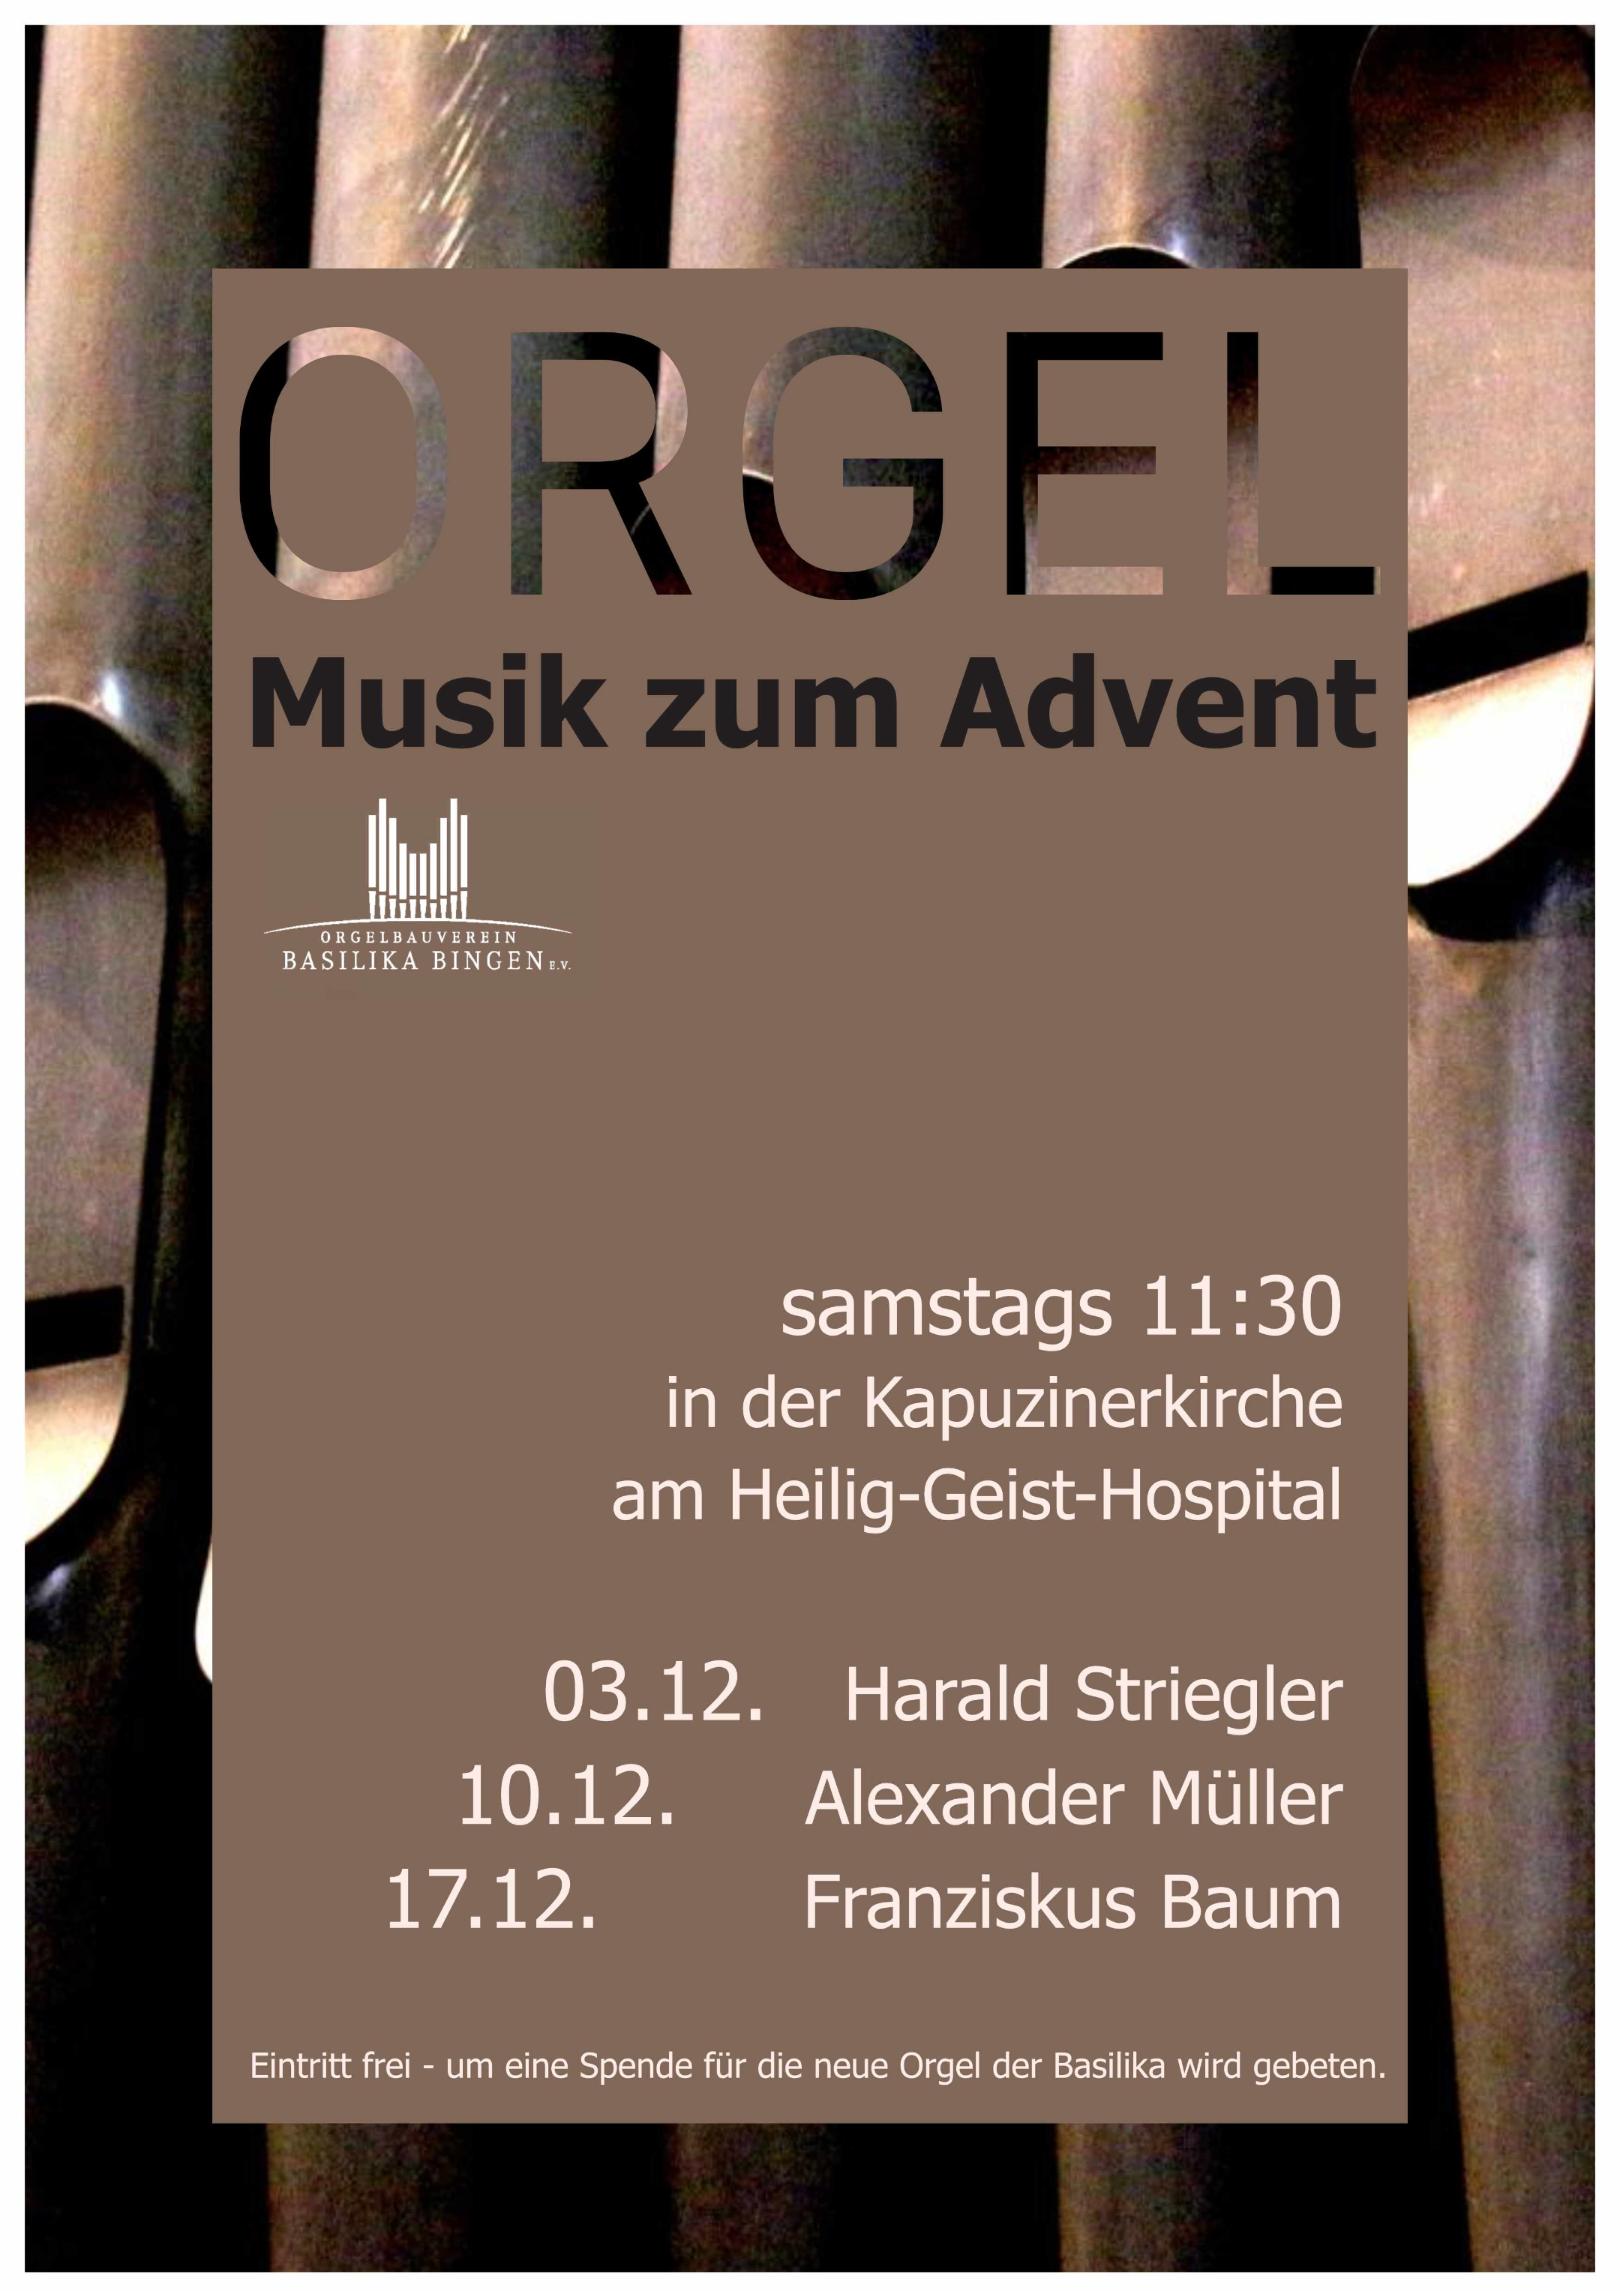 Orgelmusik zum Advent 2022 (c) Orgelbauverein Basilika Bingen